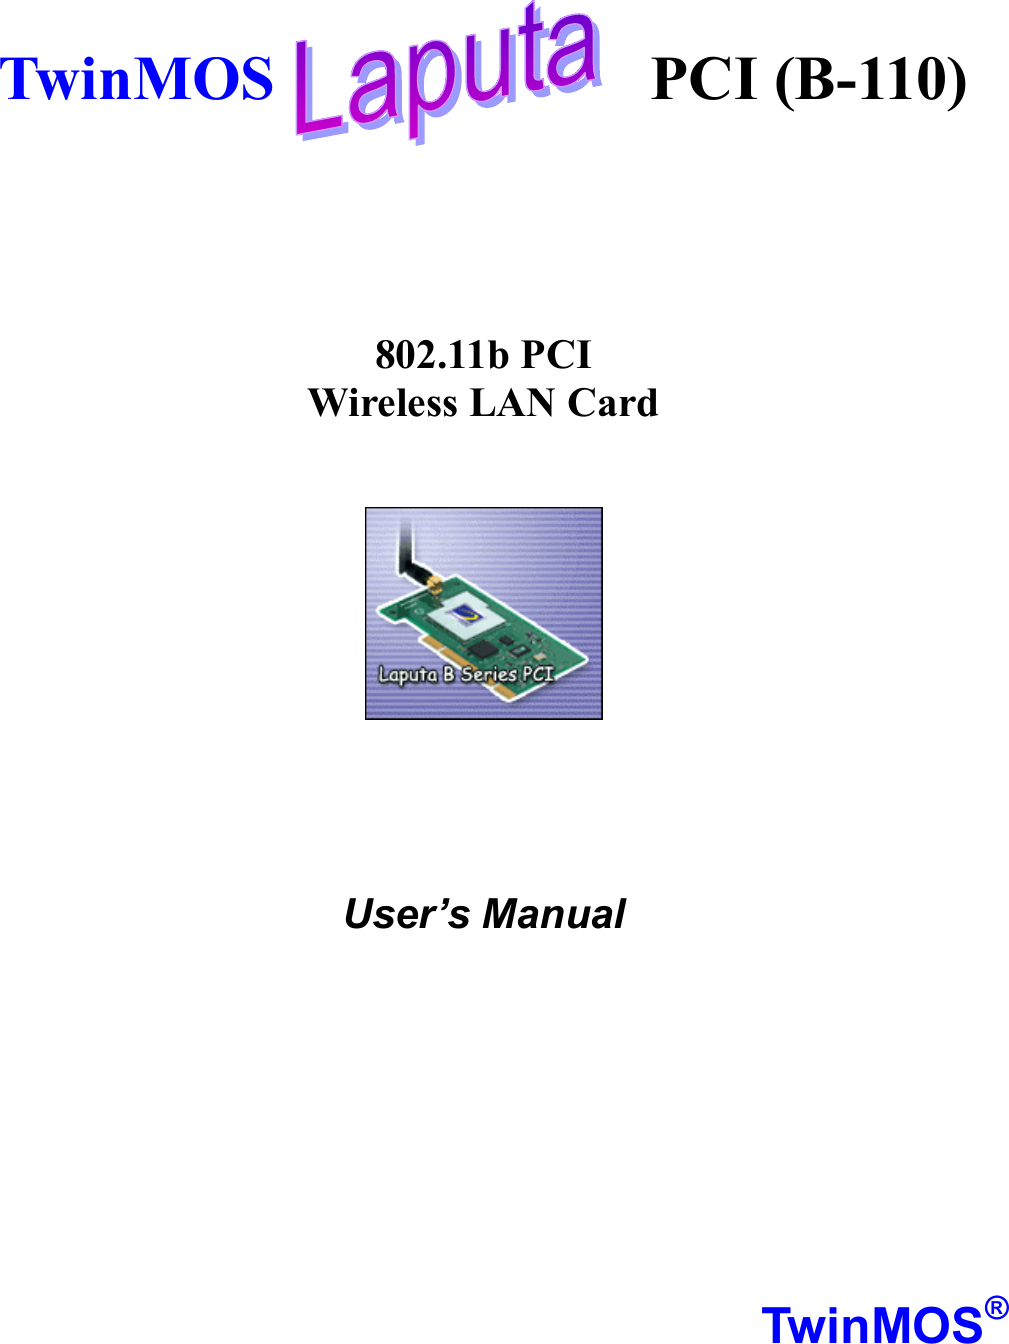     TwinMOS            PCI (B-110)      802.11b PCI Wireless LAN Card        User’s Manual          TwinMOS® 